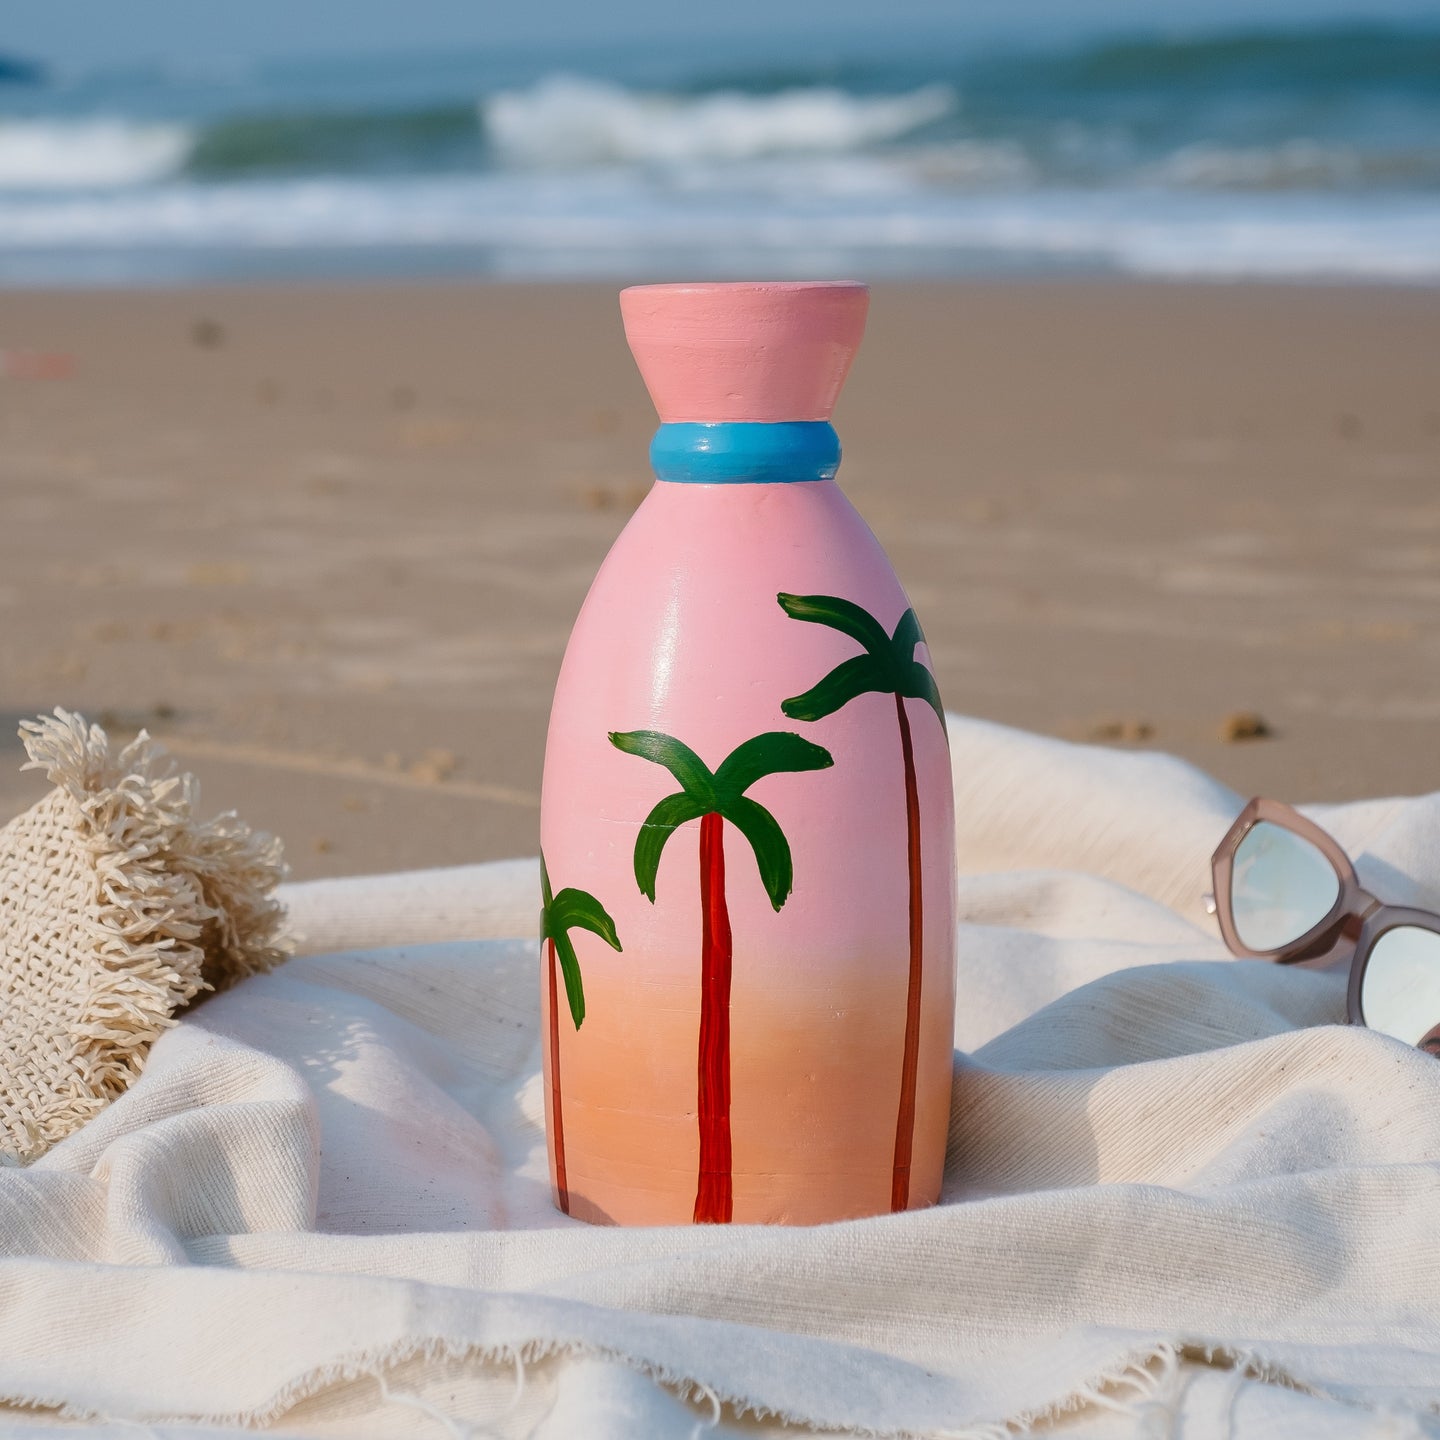 Palm trees- Summertime Calmness Handpainted Terracotta Flower Pot